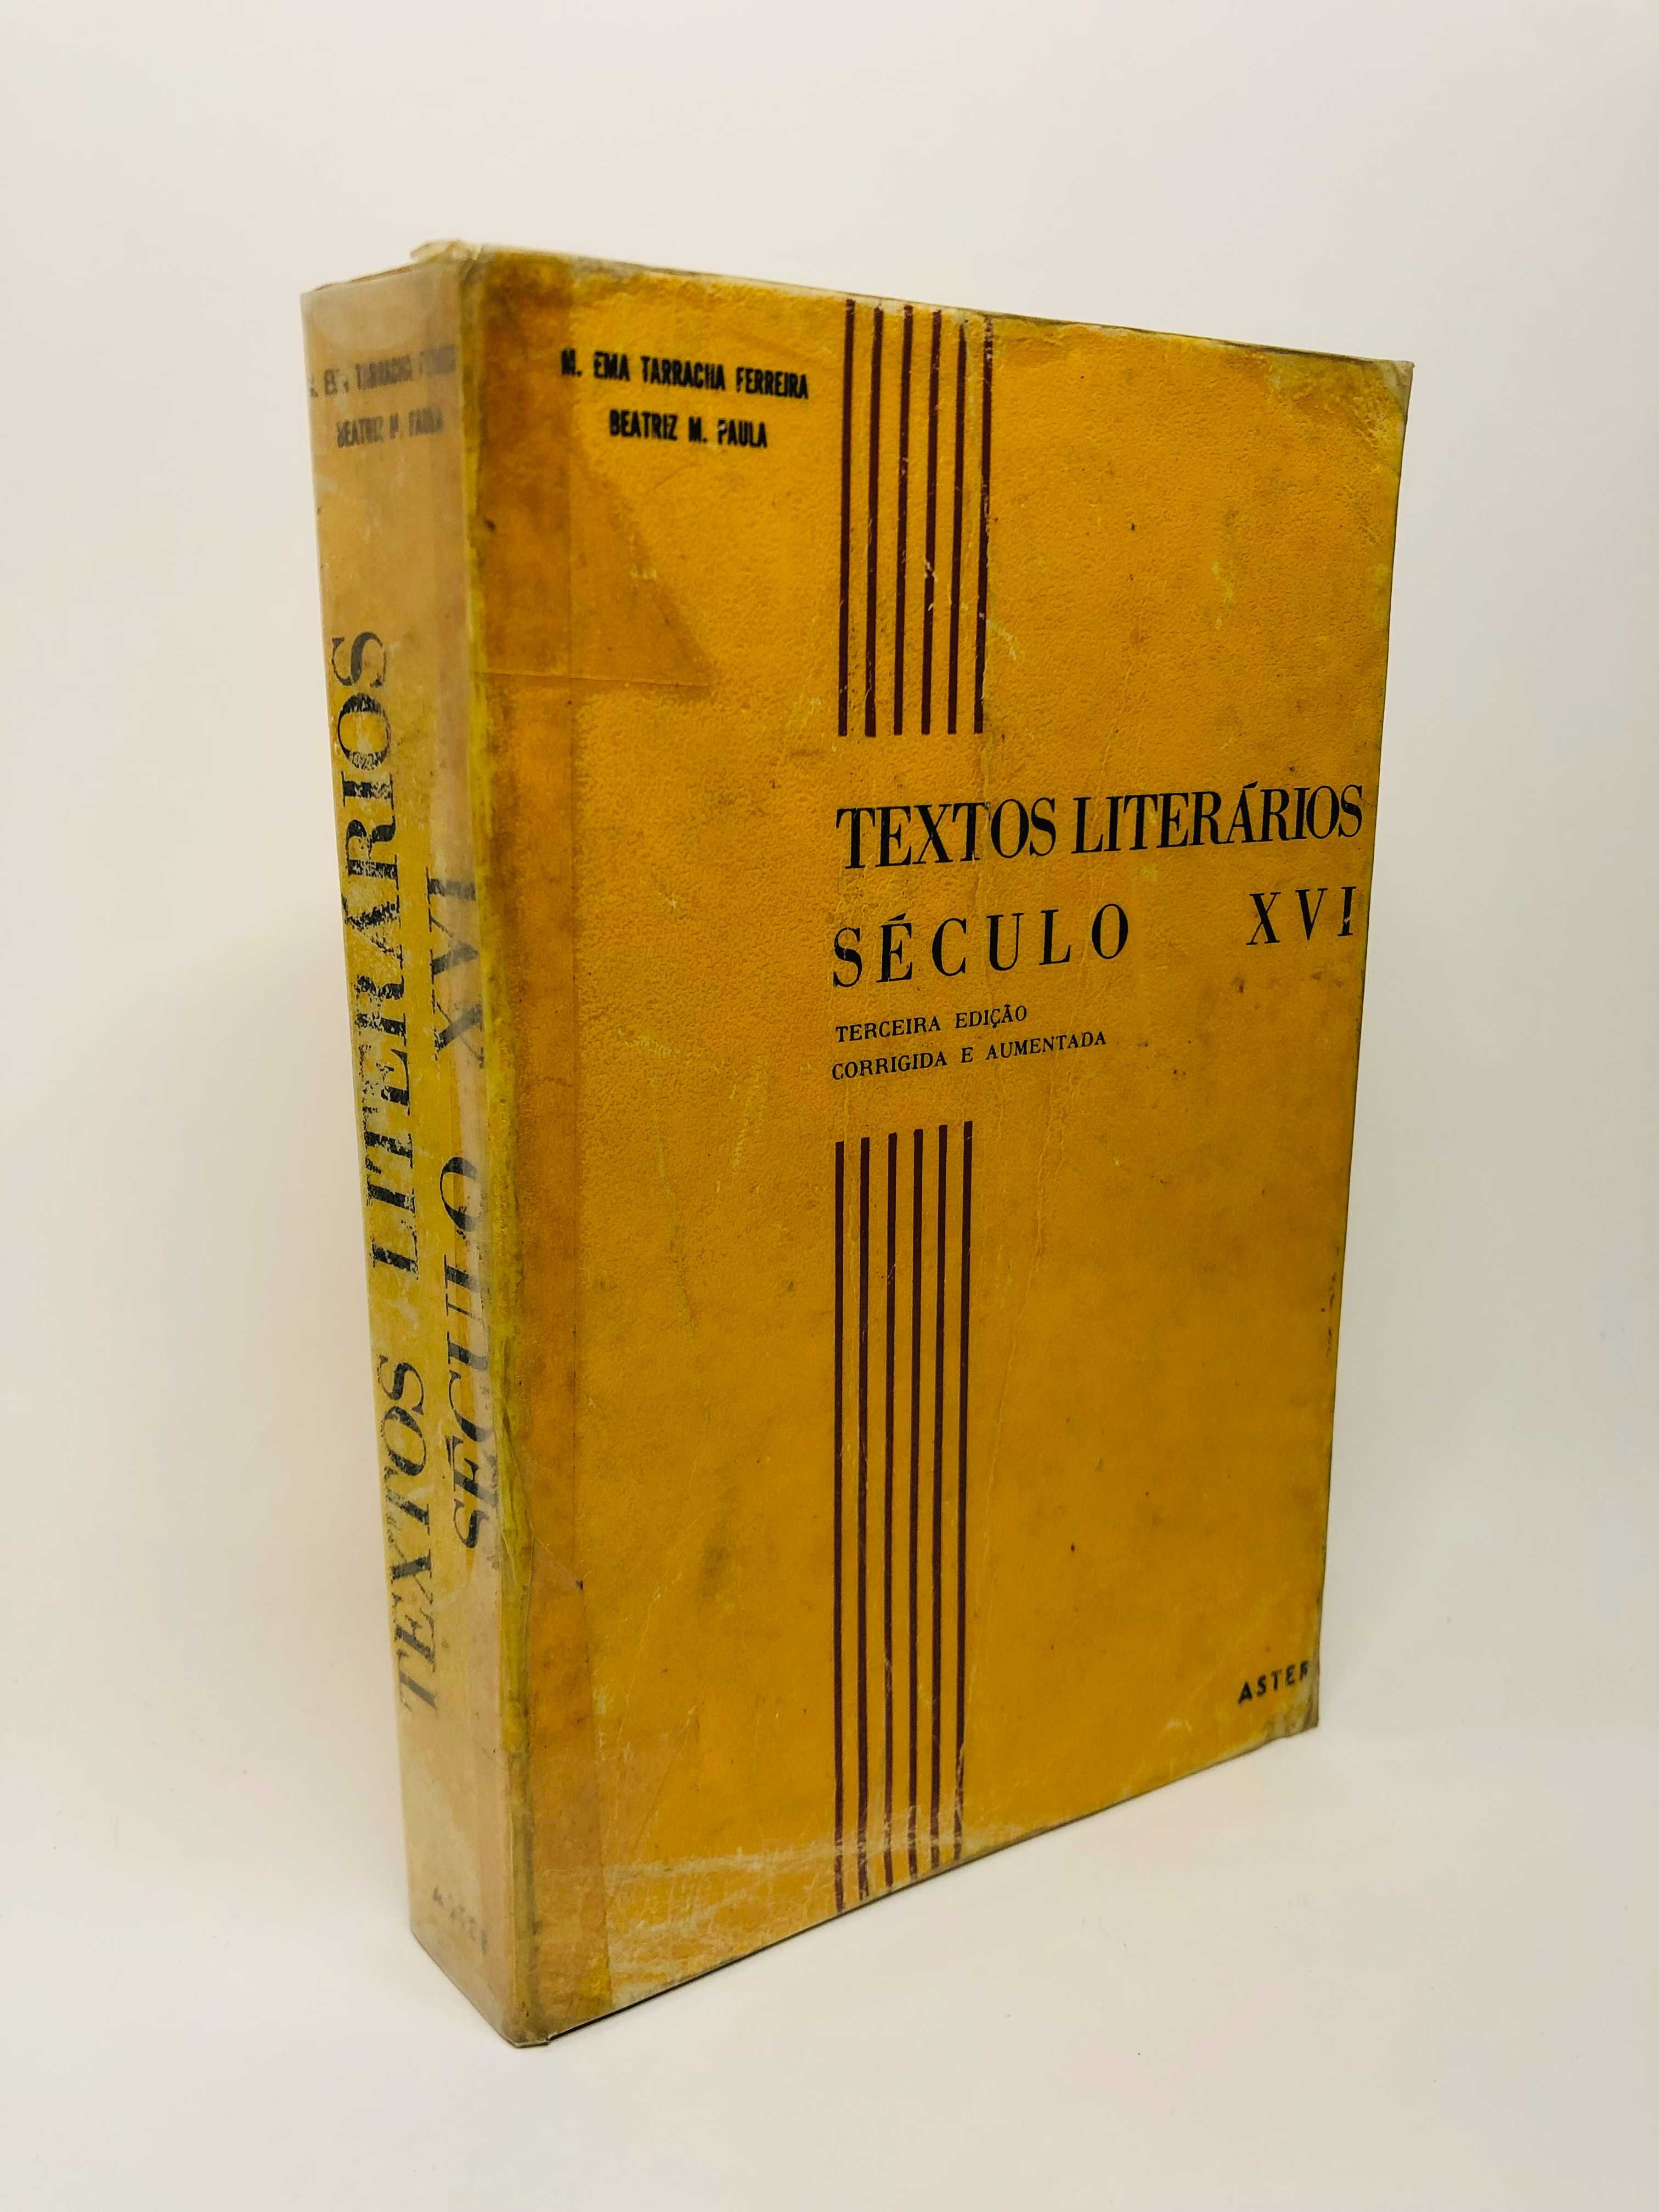 Textos literários (Século XVI) - M. Ema Tarracha Ferreira